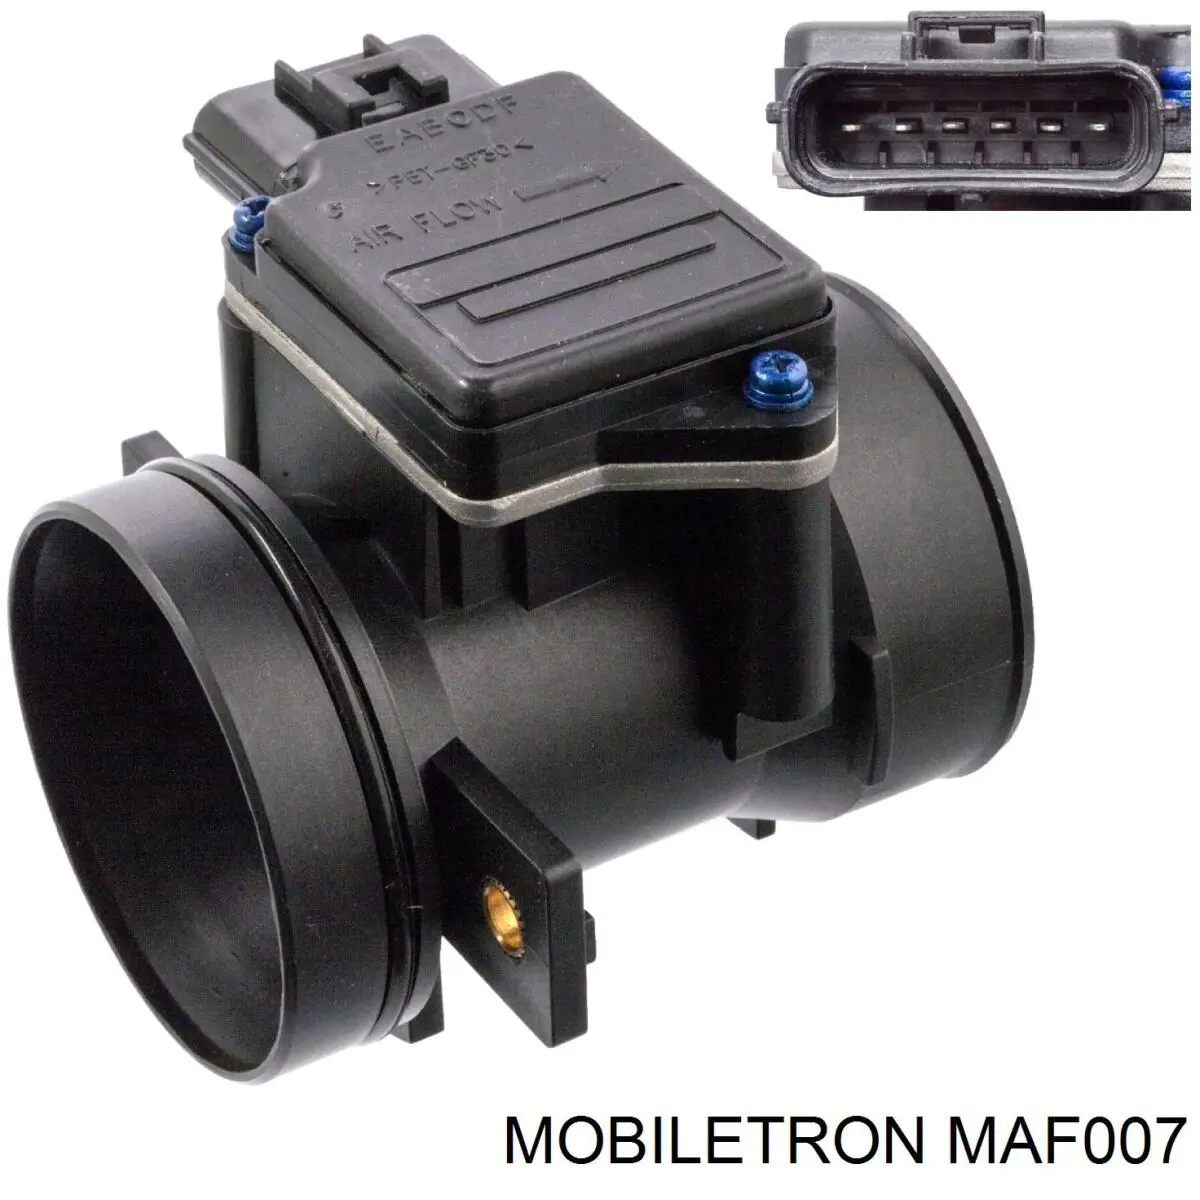 MAF007 Mobiletron medidor de masa de aire